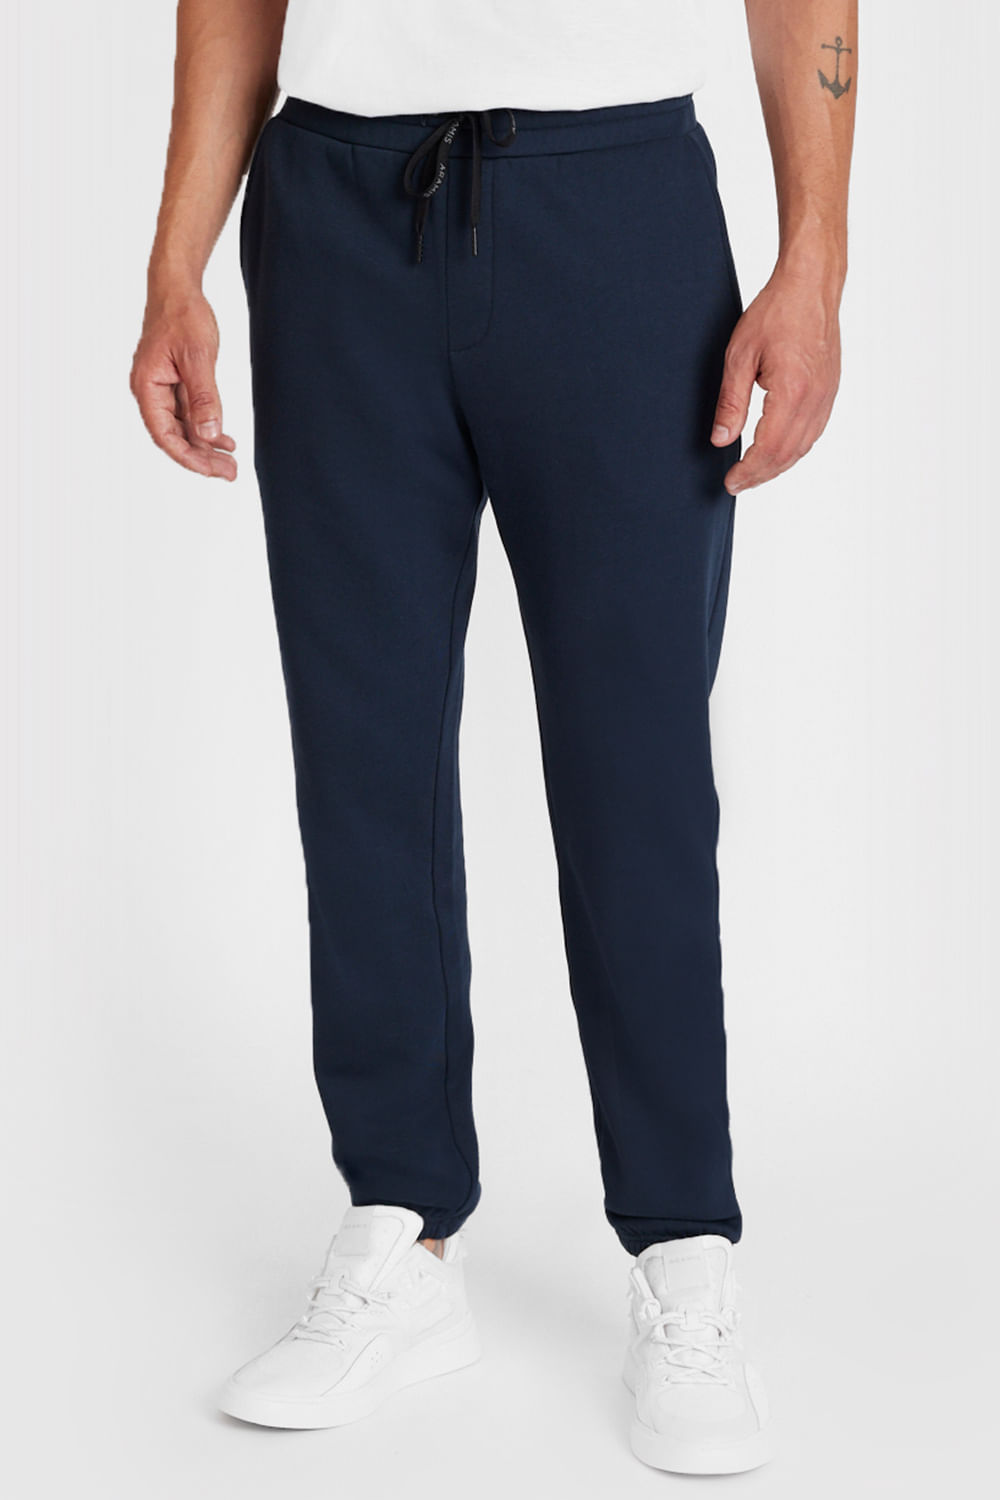 Calça Moletom Masculino Azul Marinho com Bolso - Pthirillo Jeans